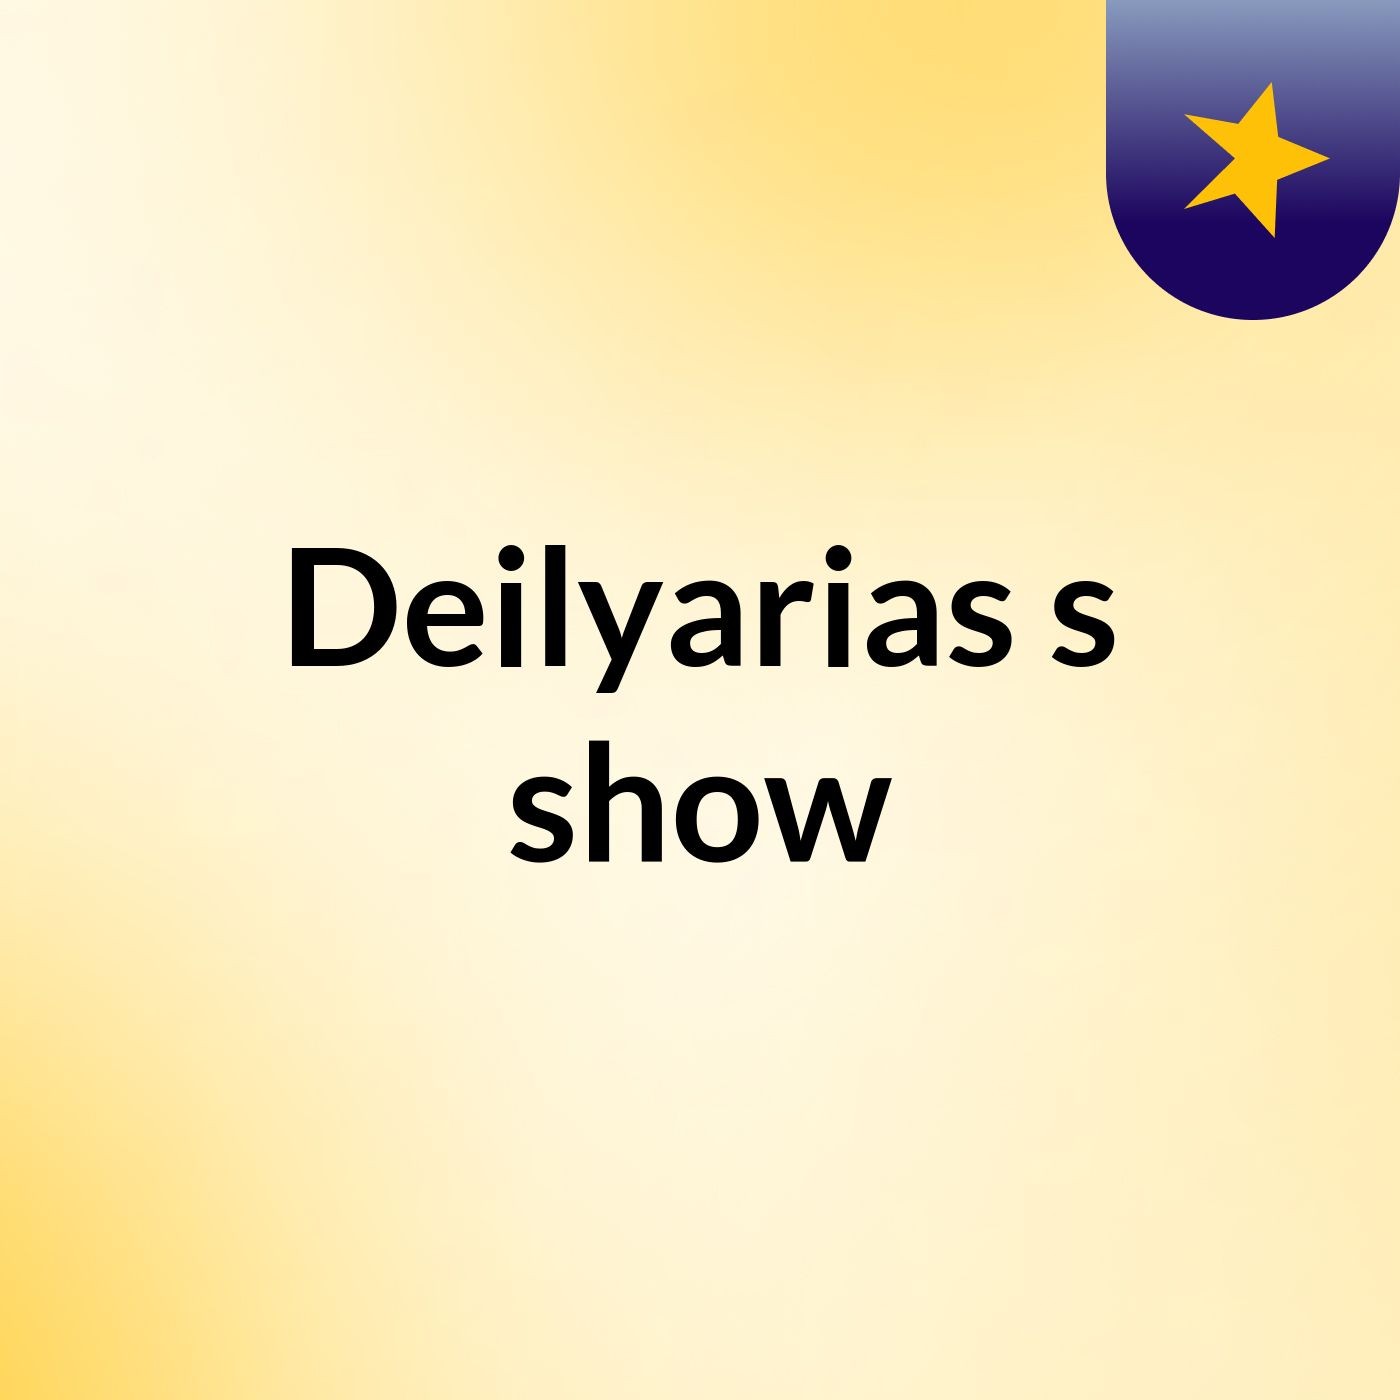 Deilyarias's show